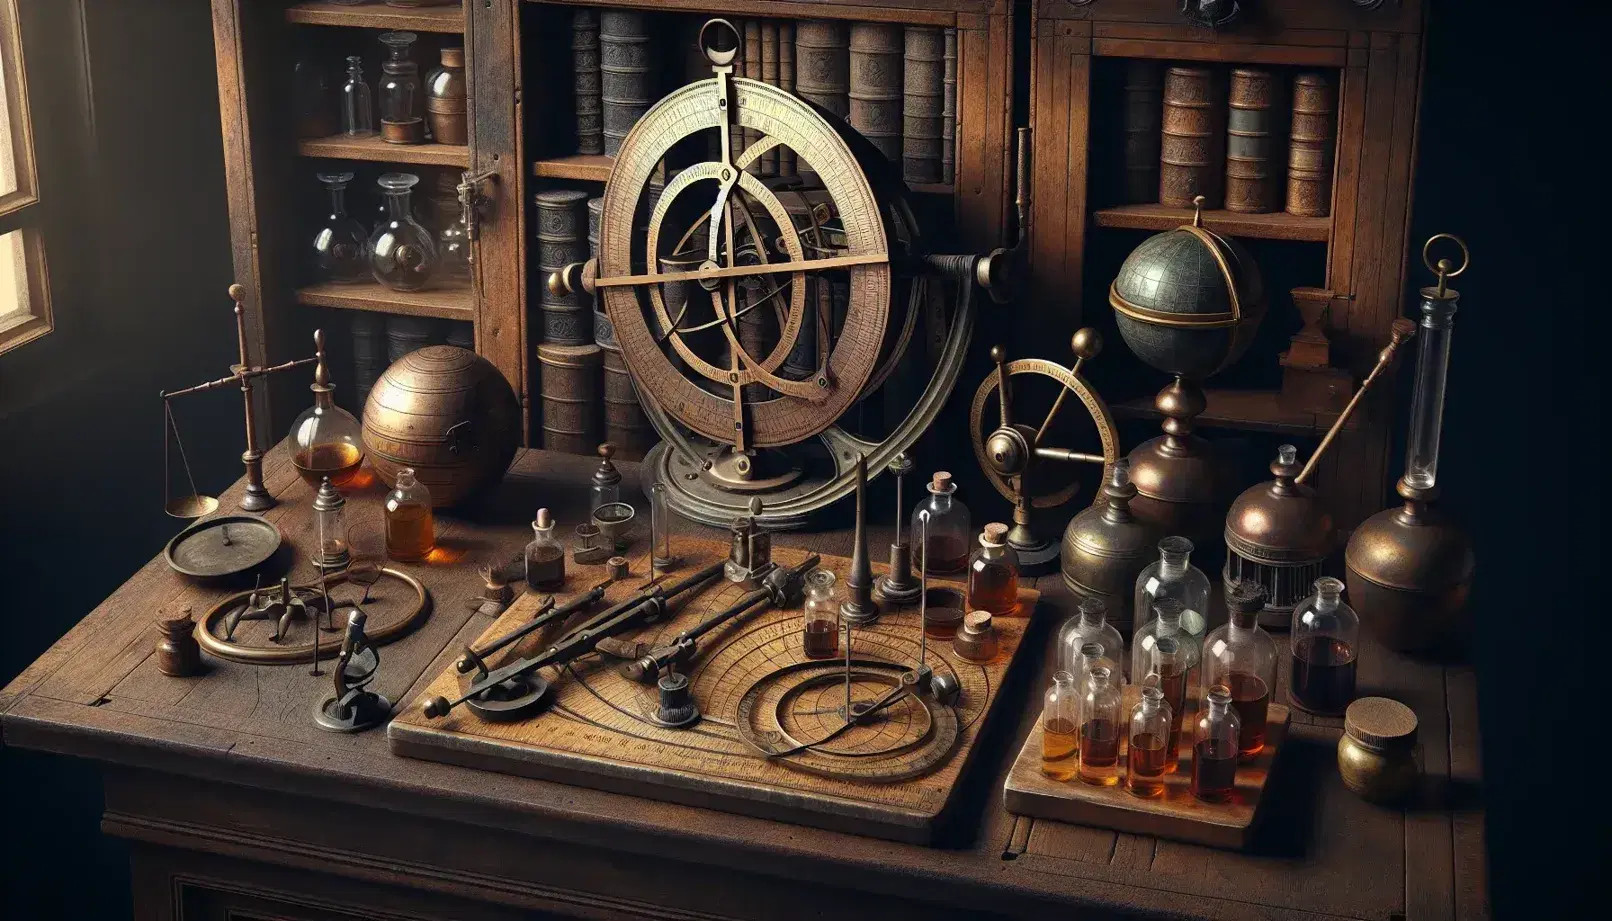 Mesa de madera antigua con instrumentos científicos del Renacimiento, incluyendo un astrolabe de metal, esferas armilares, un microscopio primitivo y frascos de vidrio con líquidos coloridos.